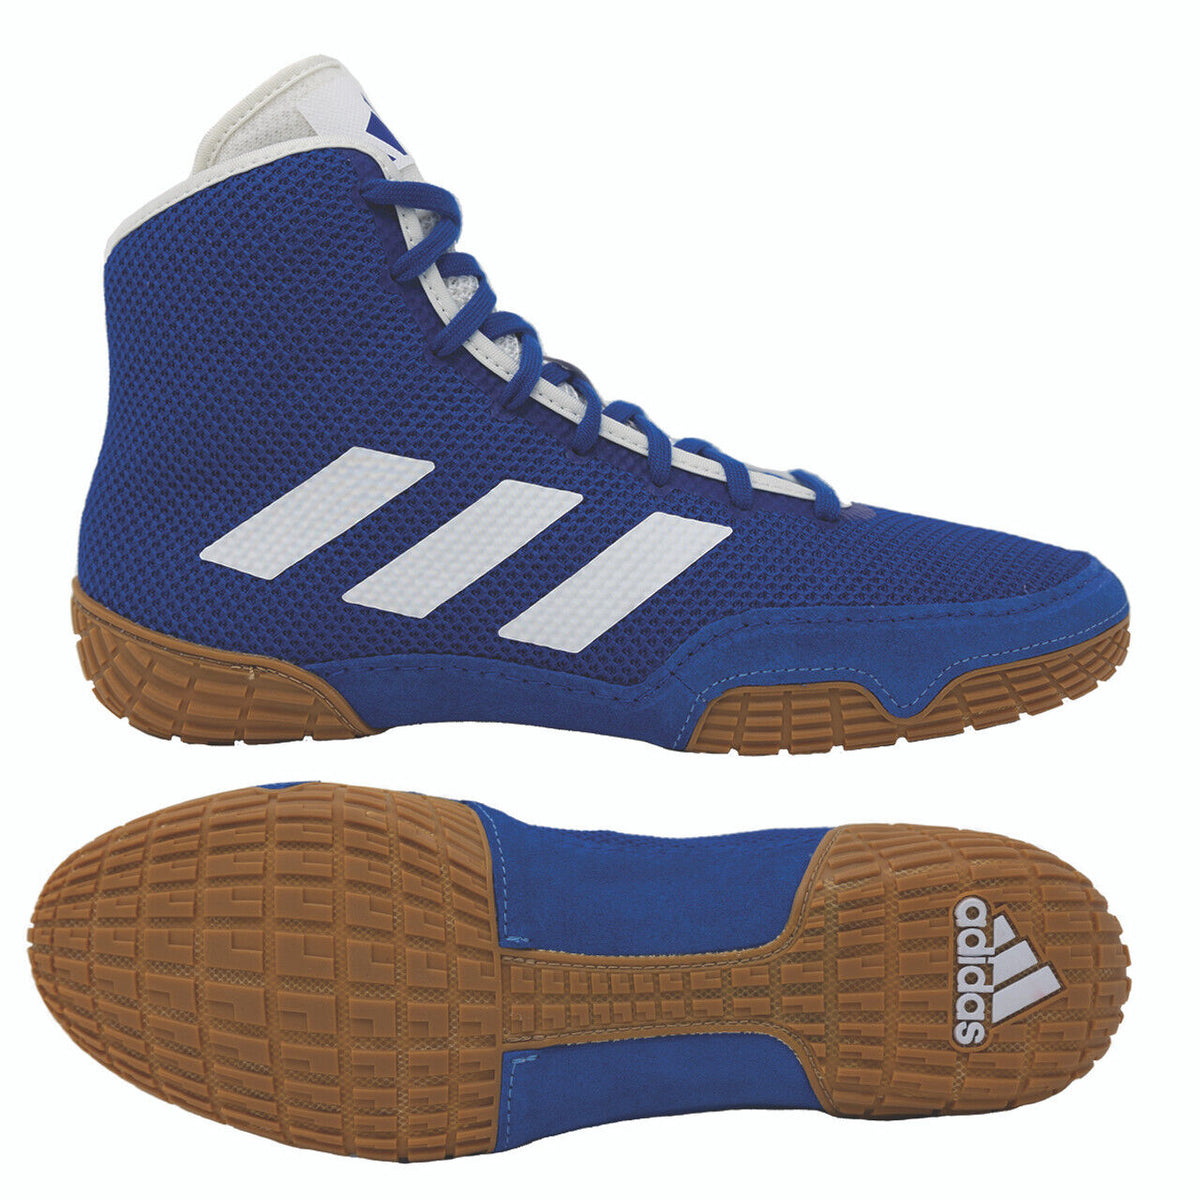 Las zapatillas de lucha Adidas Tech-Fall en color azul. Ahora al mejor precio en Phantom Athletics . Los zapatos de lucha Adidas se encuentran entre los zapatos más buscados entre los luchadores de todo el mundo, ya que ofrecen una calidad superior junto con la máxima comodidad. La suela resistente proporciona tracción sobre la colchoneta de lucha. 